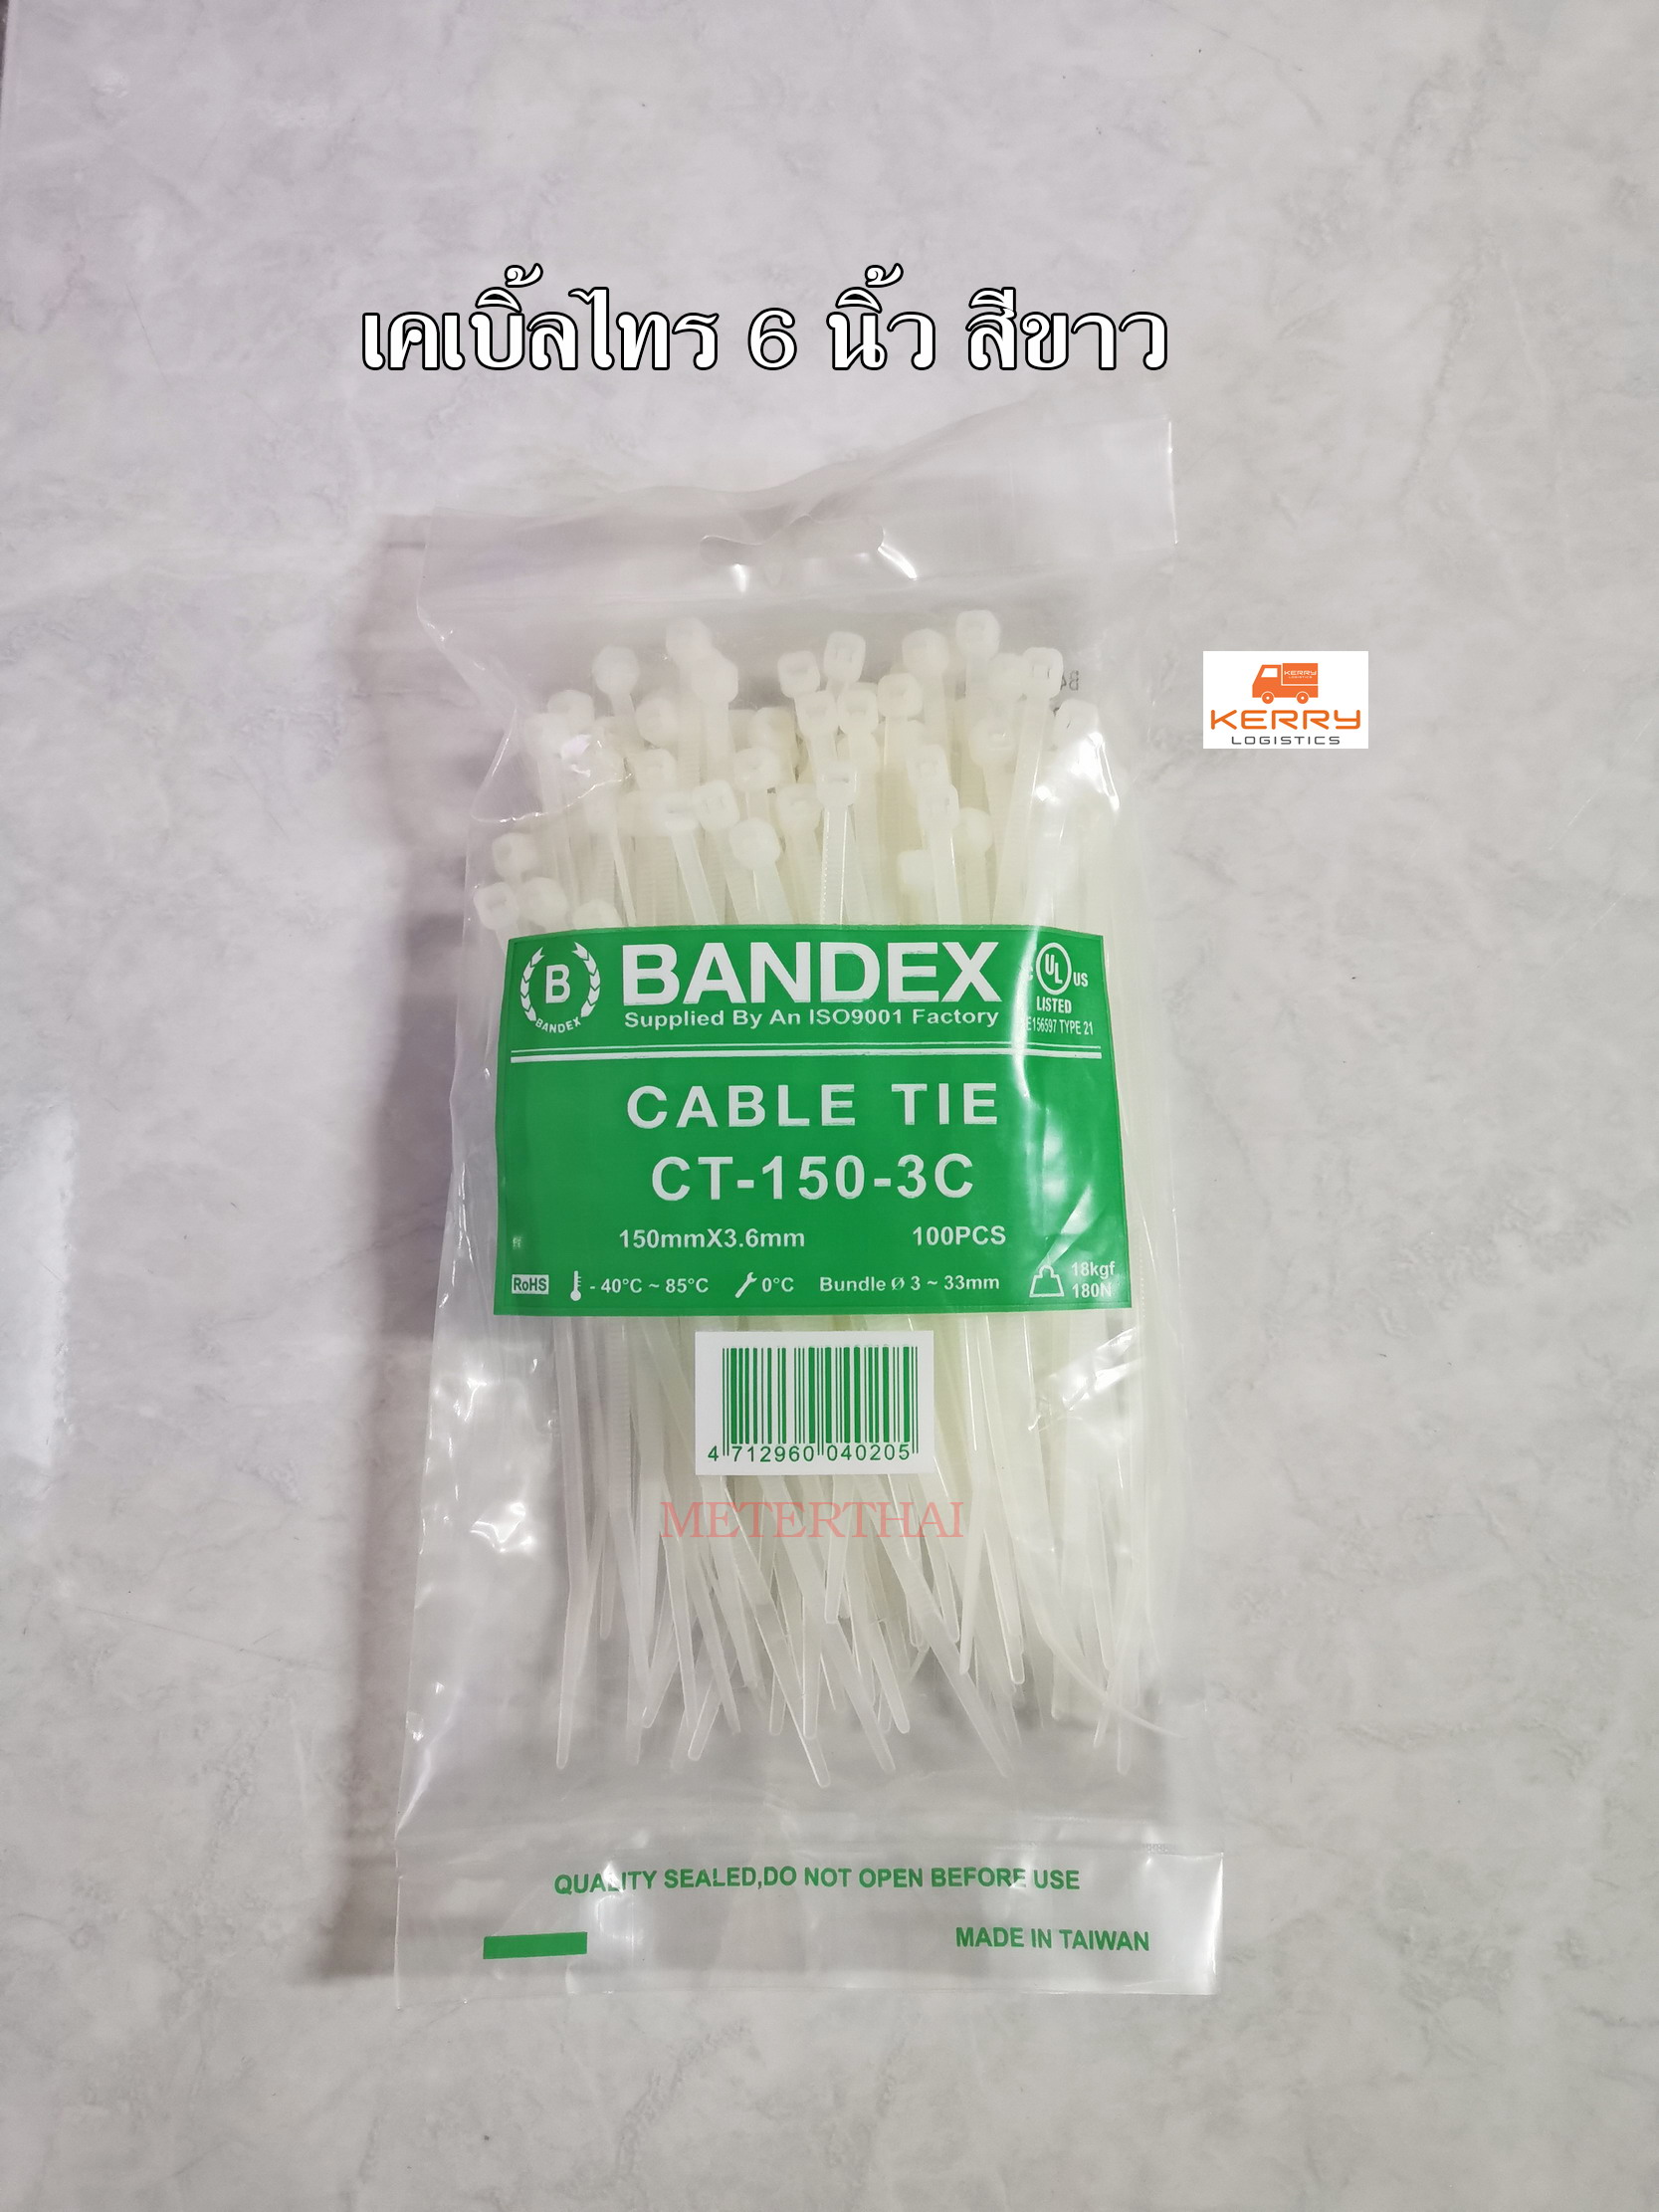 BANDEX เคเบิ้ลไทร์ 6 นิ้ว Cable Tie สีดำ สีขาว ถุงละ 100 เส้น